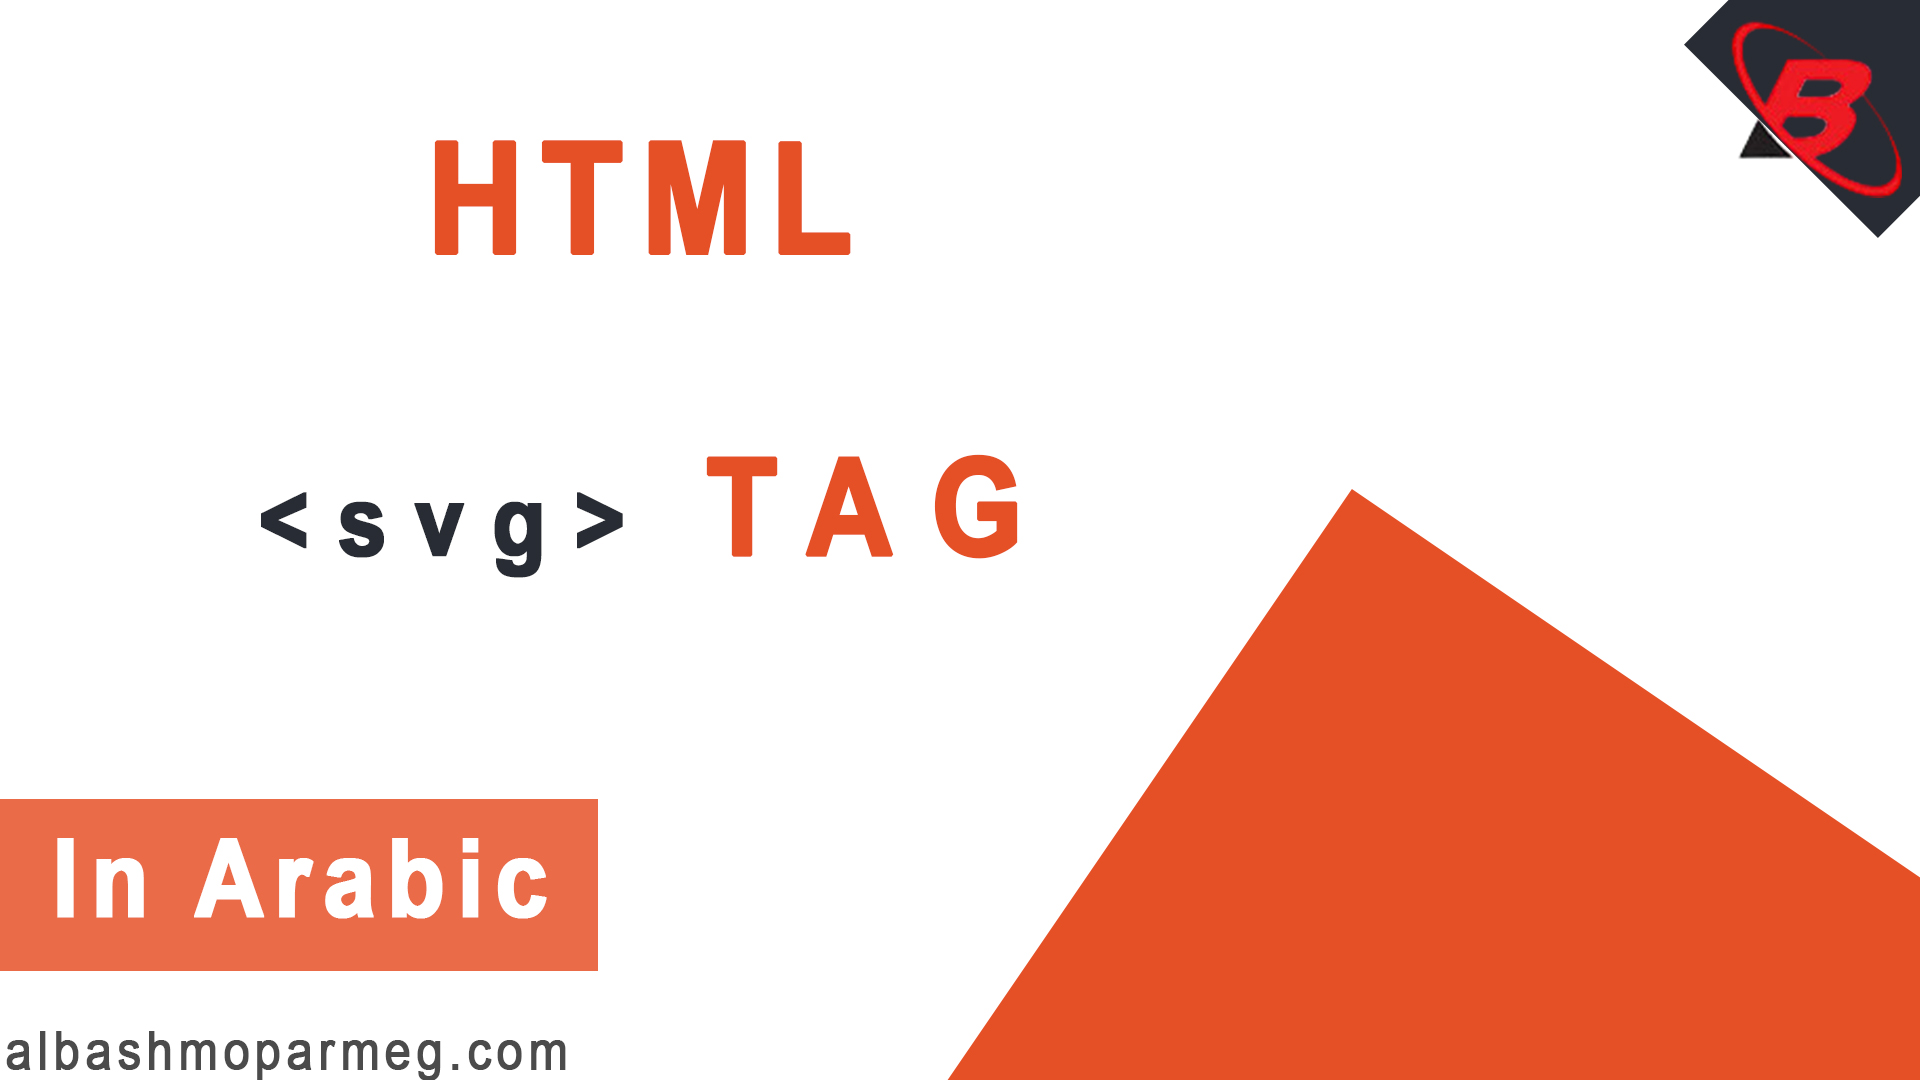 HTML svg Tag - الباشمبرمج